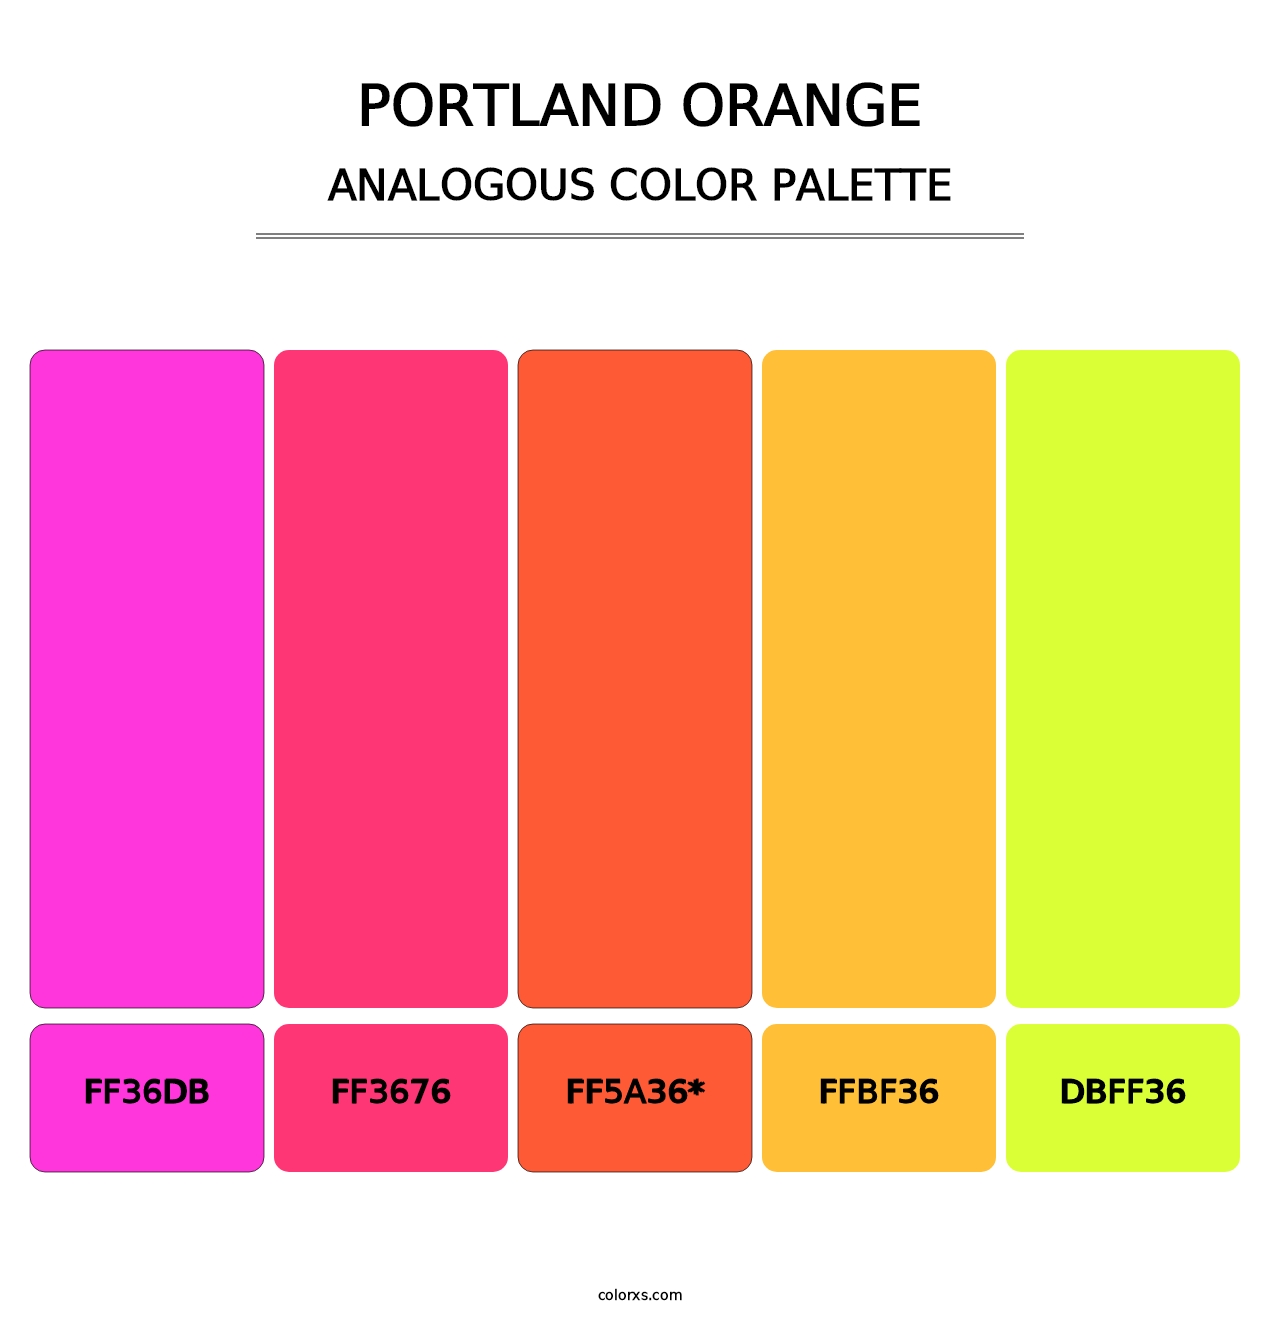 Portland Orange - Analogous Color Palette